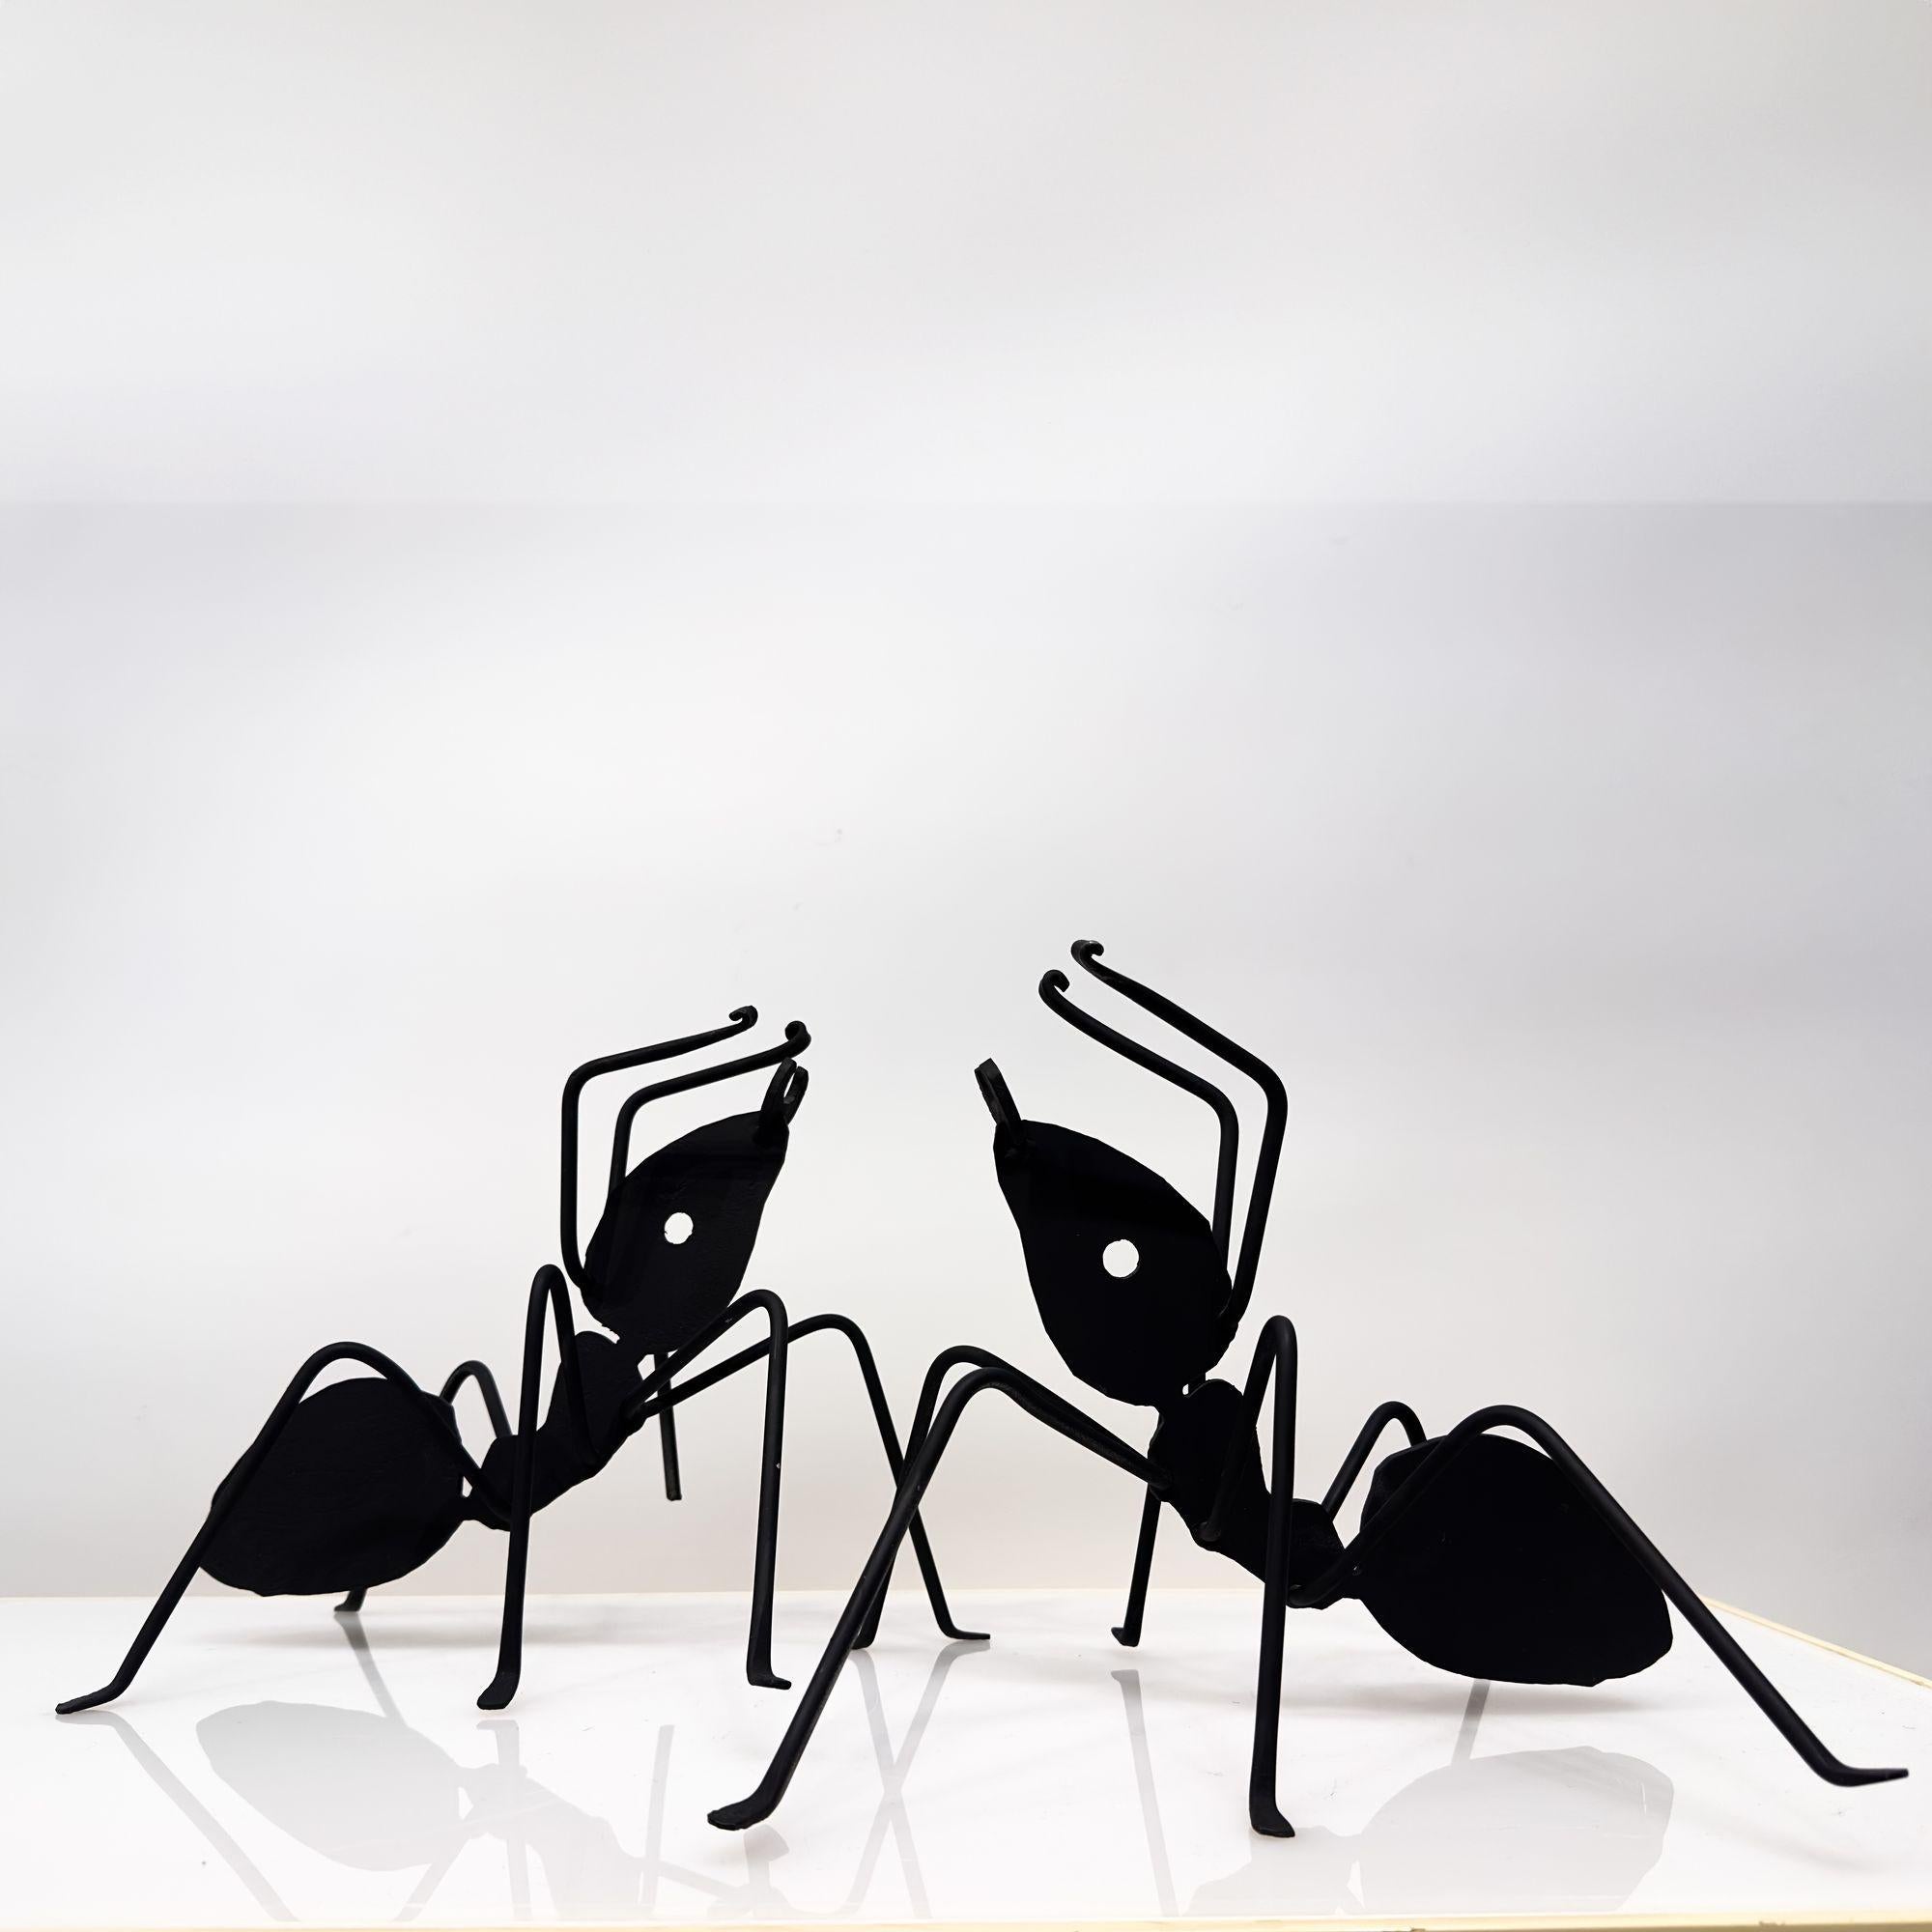 Pair Enameled Metal Black Ant Sculptures.
Measure 12.5